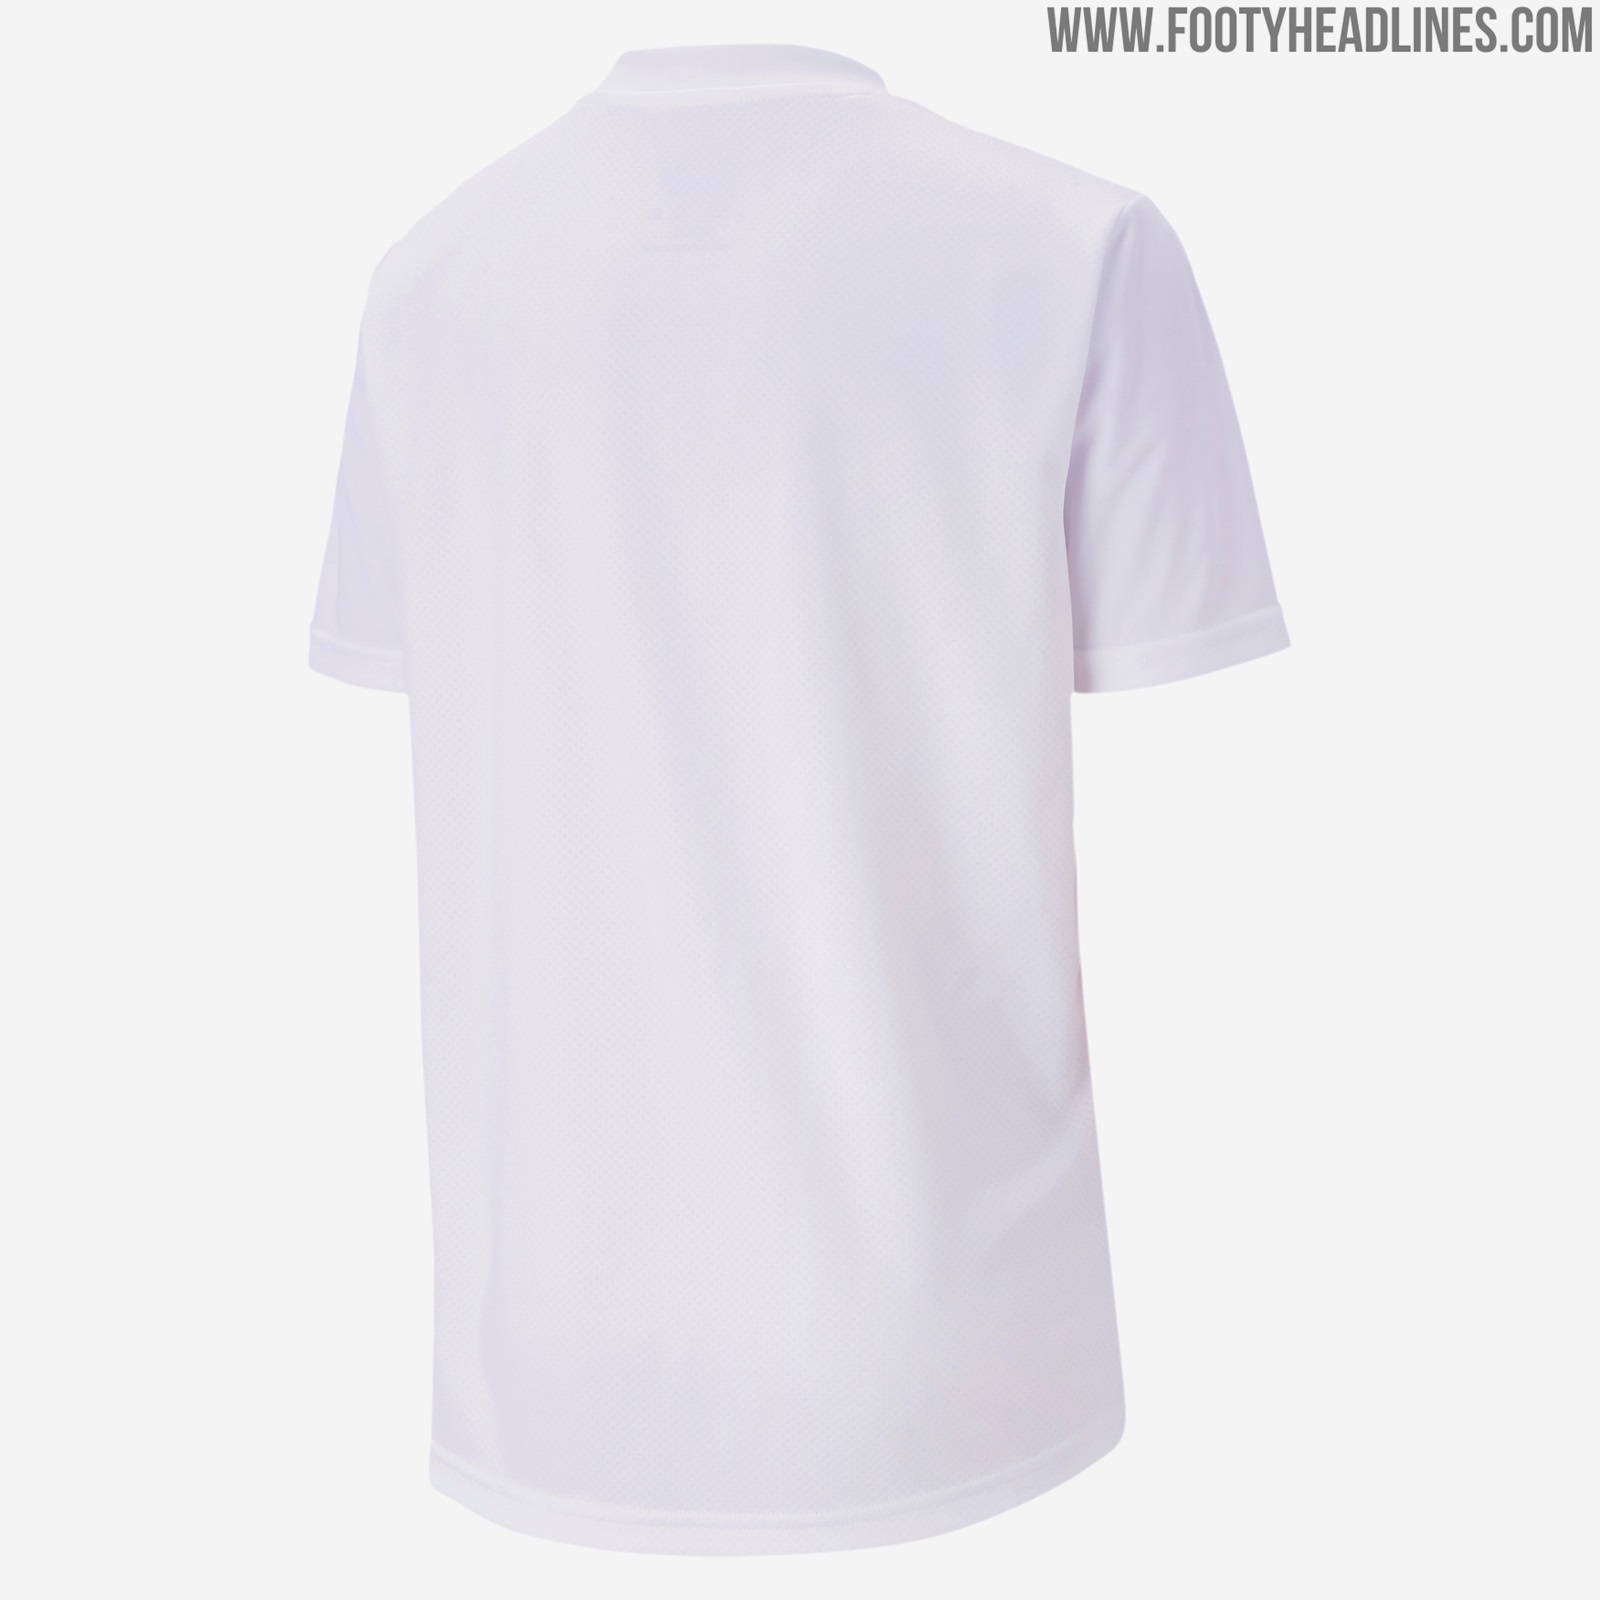 Away Kit Design: AC Milan 20-21 Away Pre-Match Shirt Leaked - Footy ...